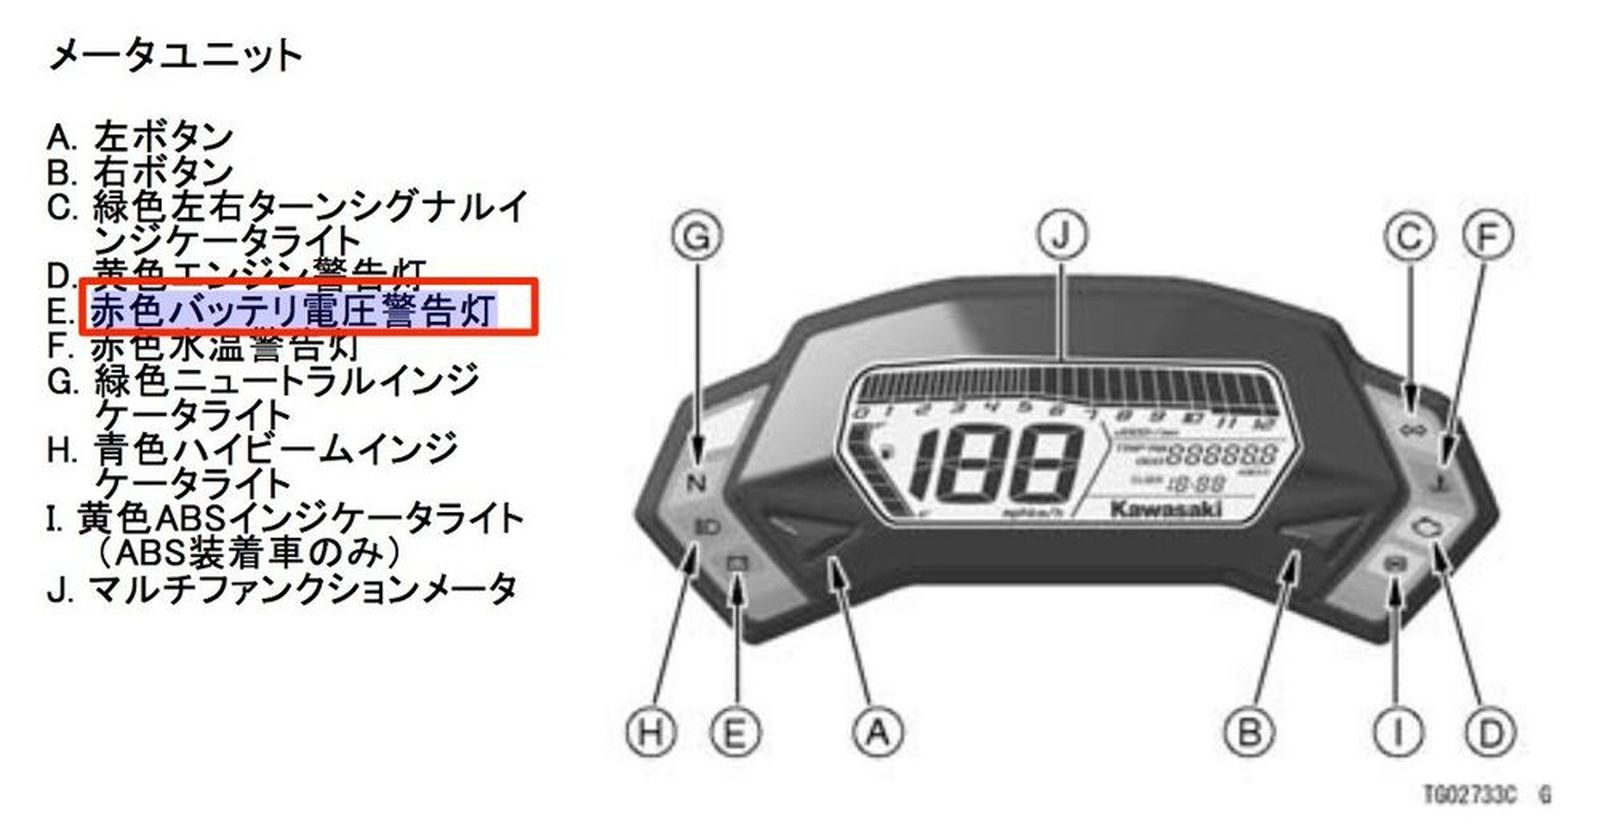 Kawasaki ニンジャ250sl む バッテリ警告灯 だと ウェビックコミュニティ